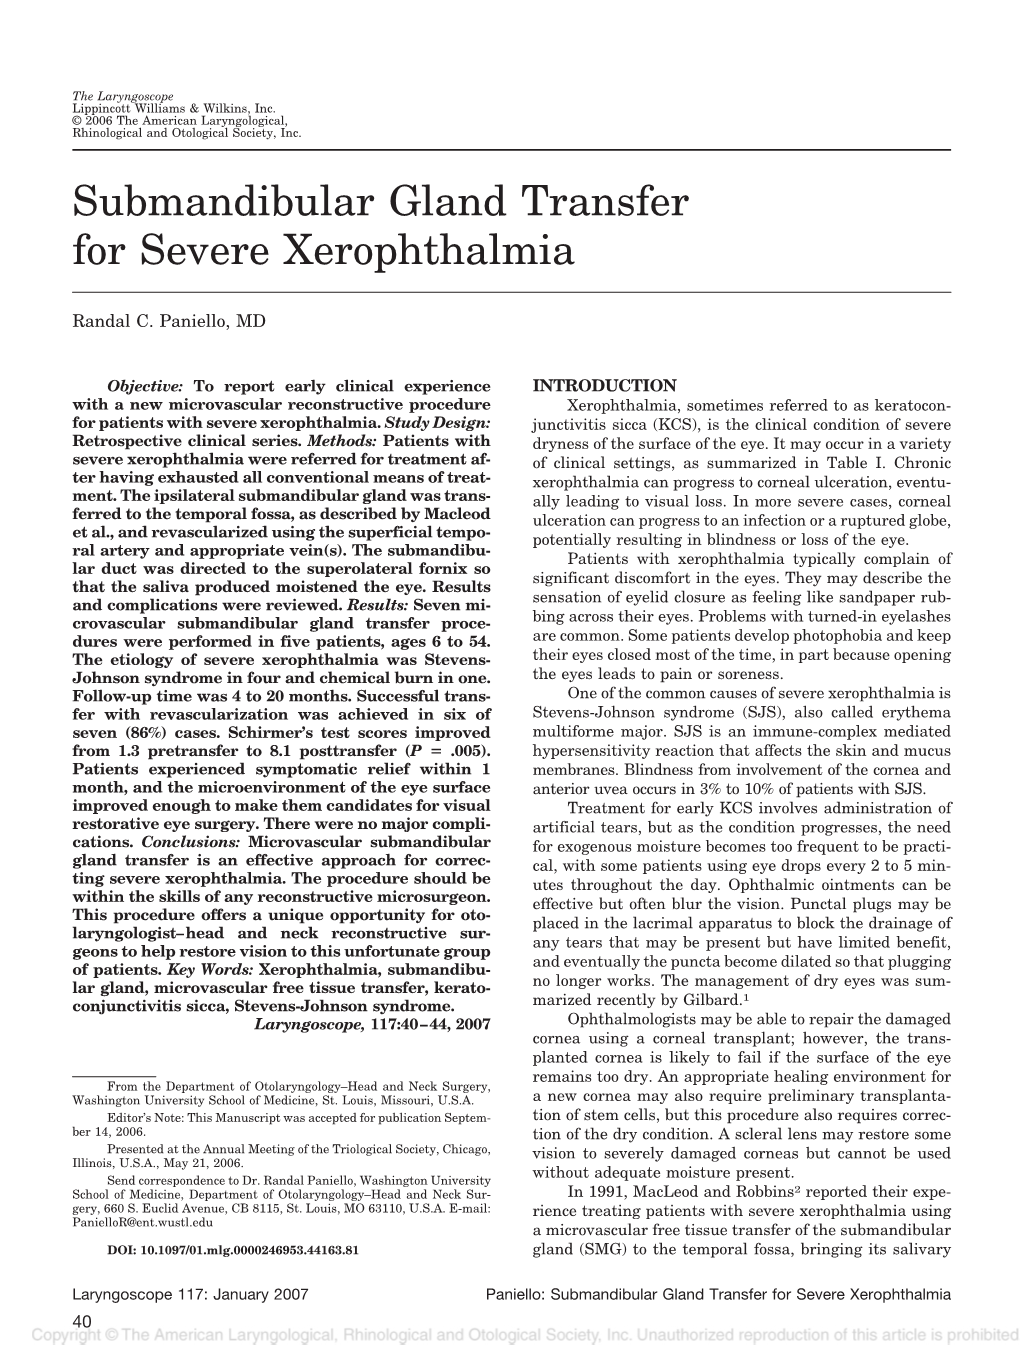 Submandibular Gland Transfer for Severe Xerophthalmia